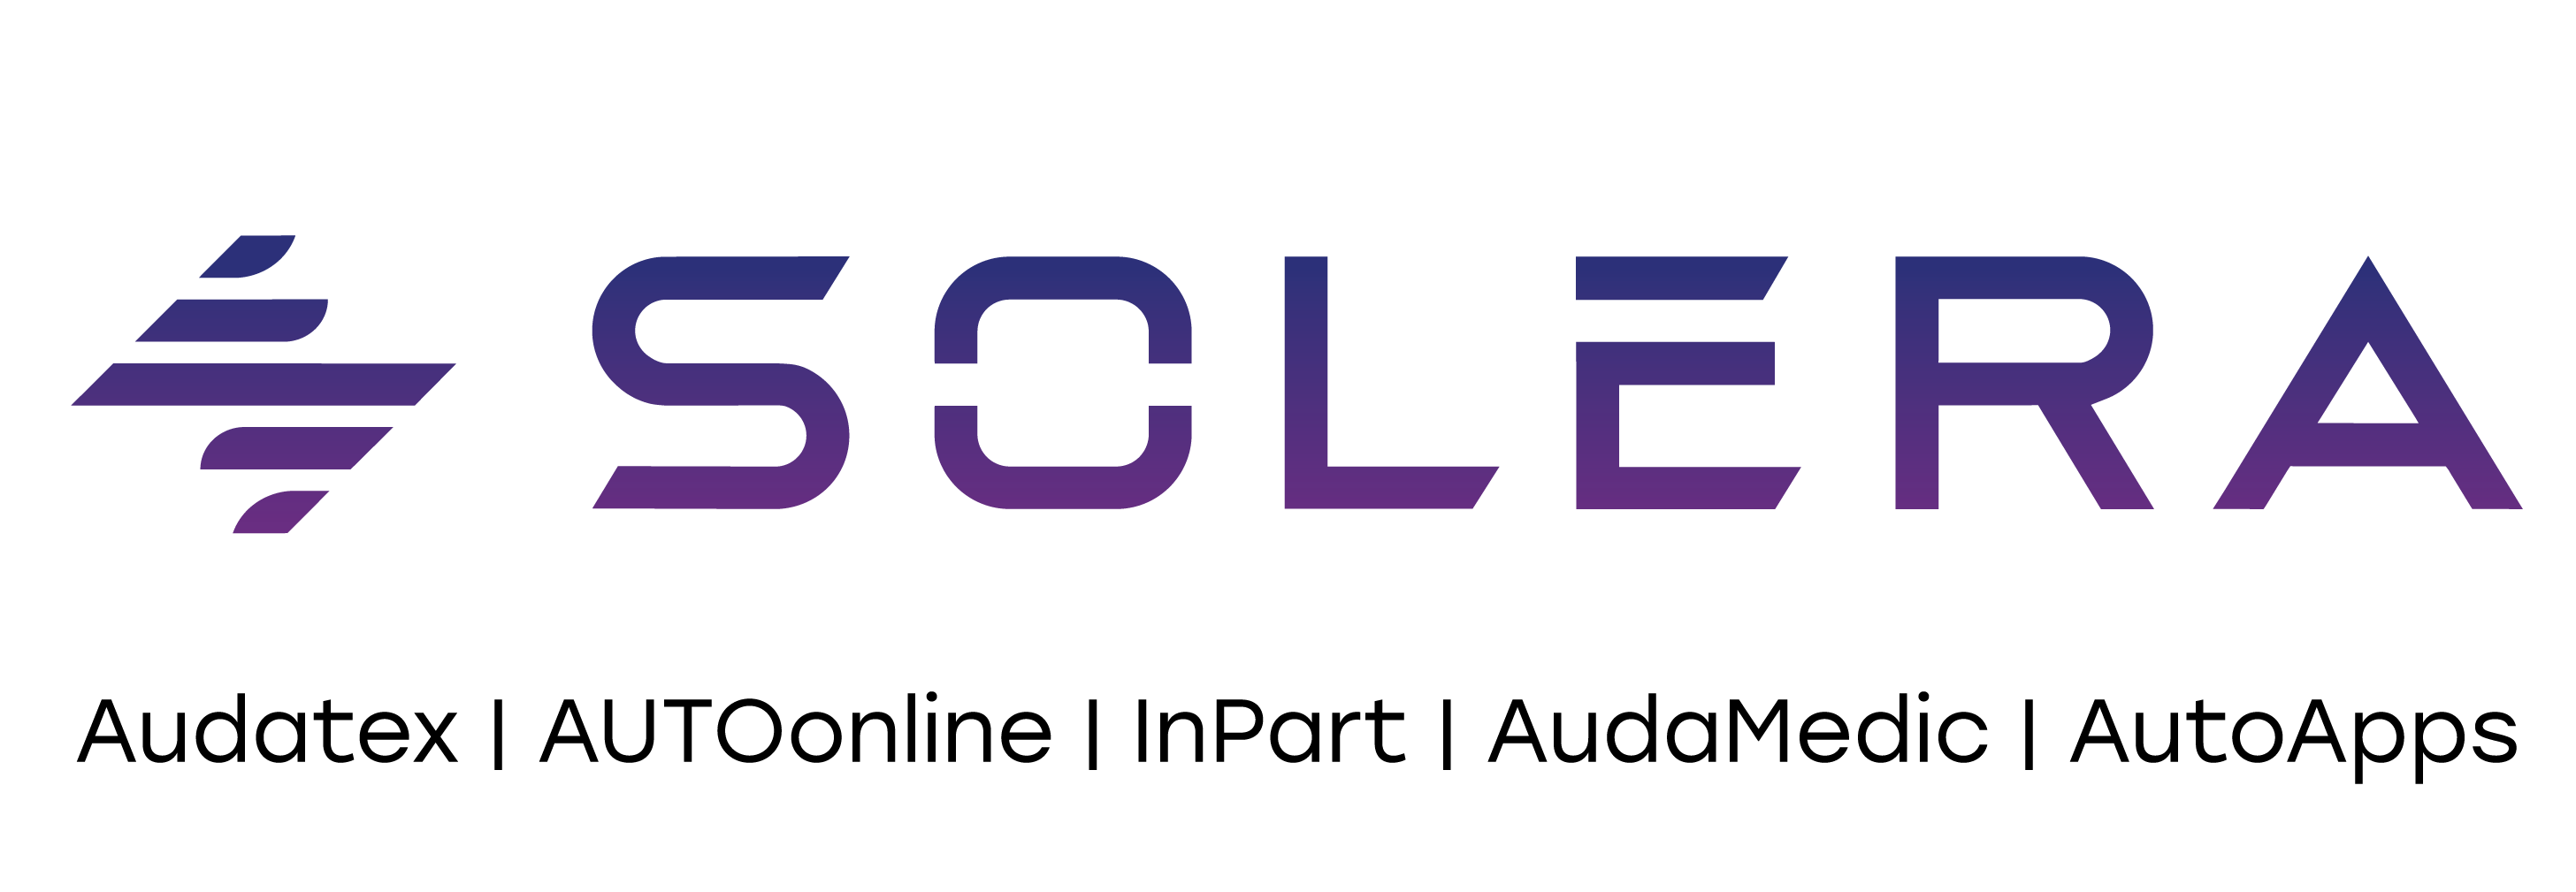 Logo Solera